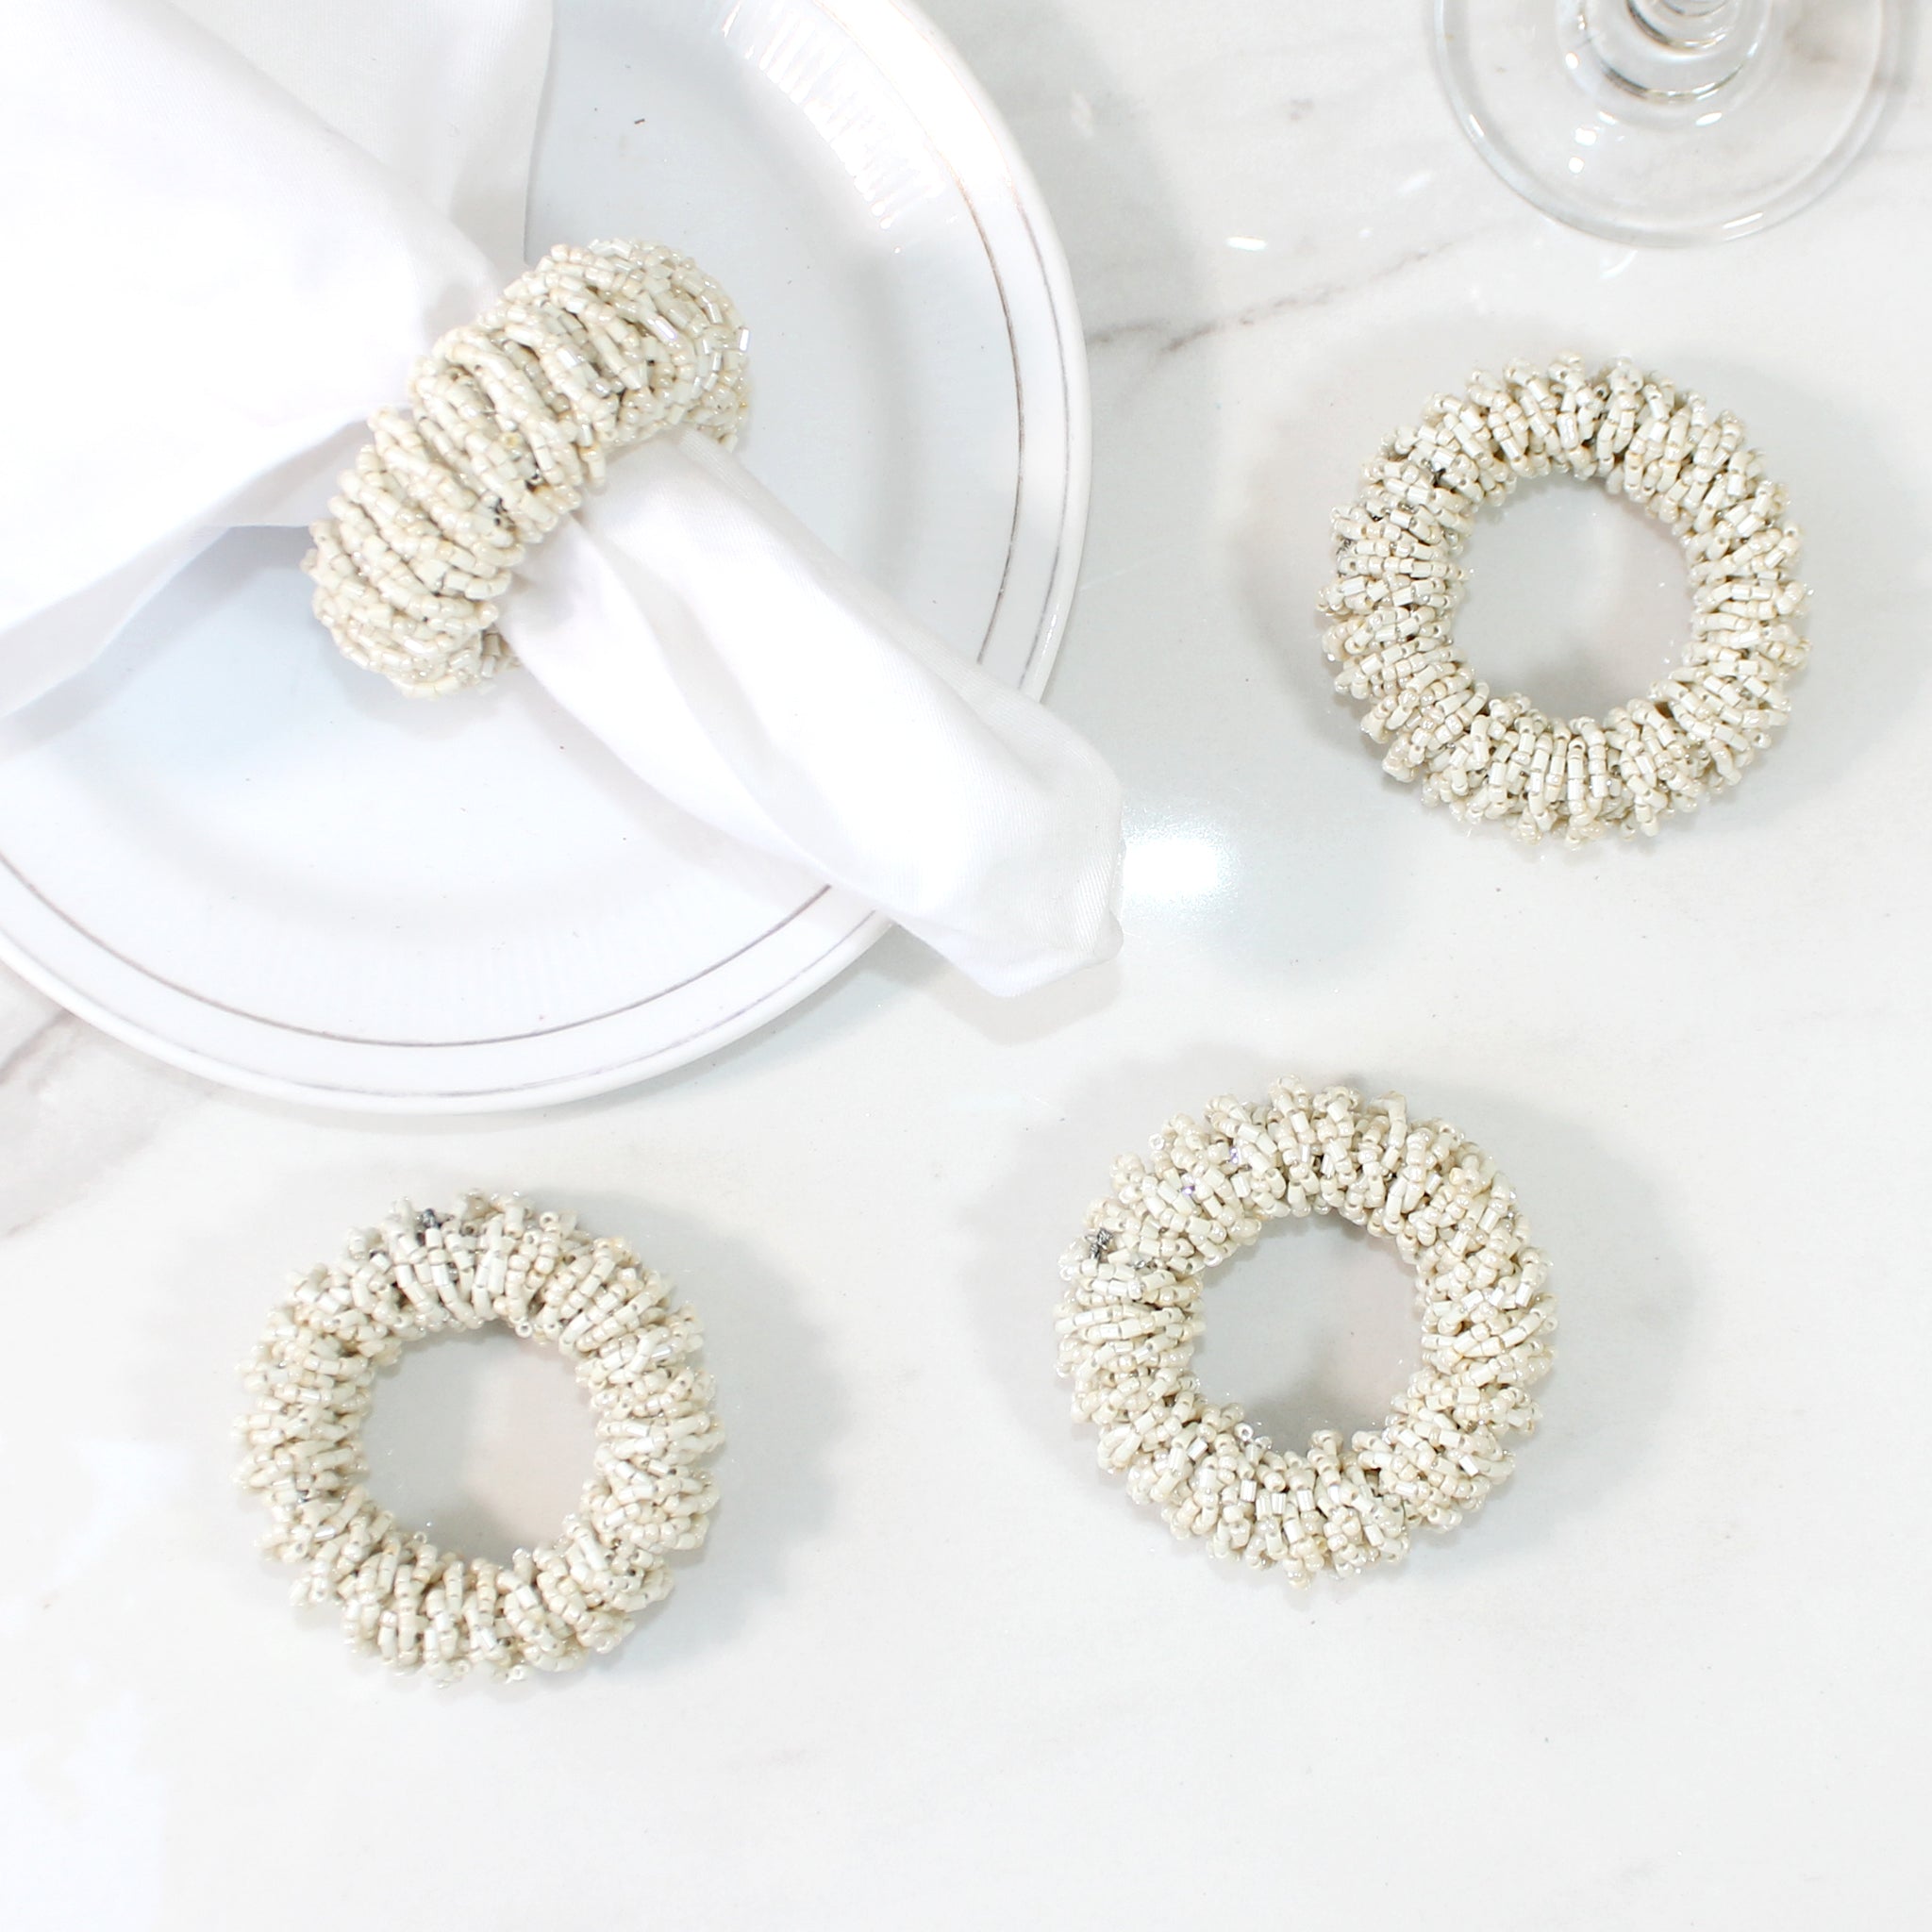 Linen by Trunkin'/ Beaded Napkin Ring Set of 4 / White/2" Dia